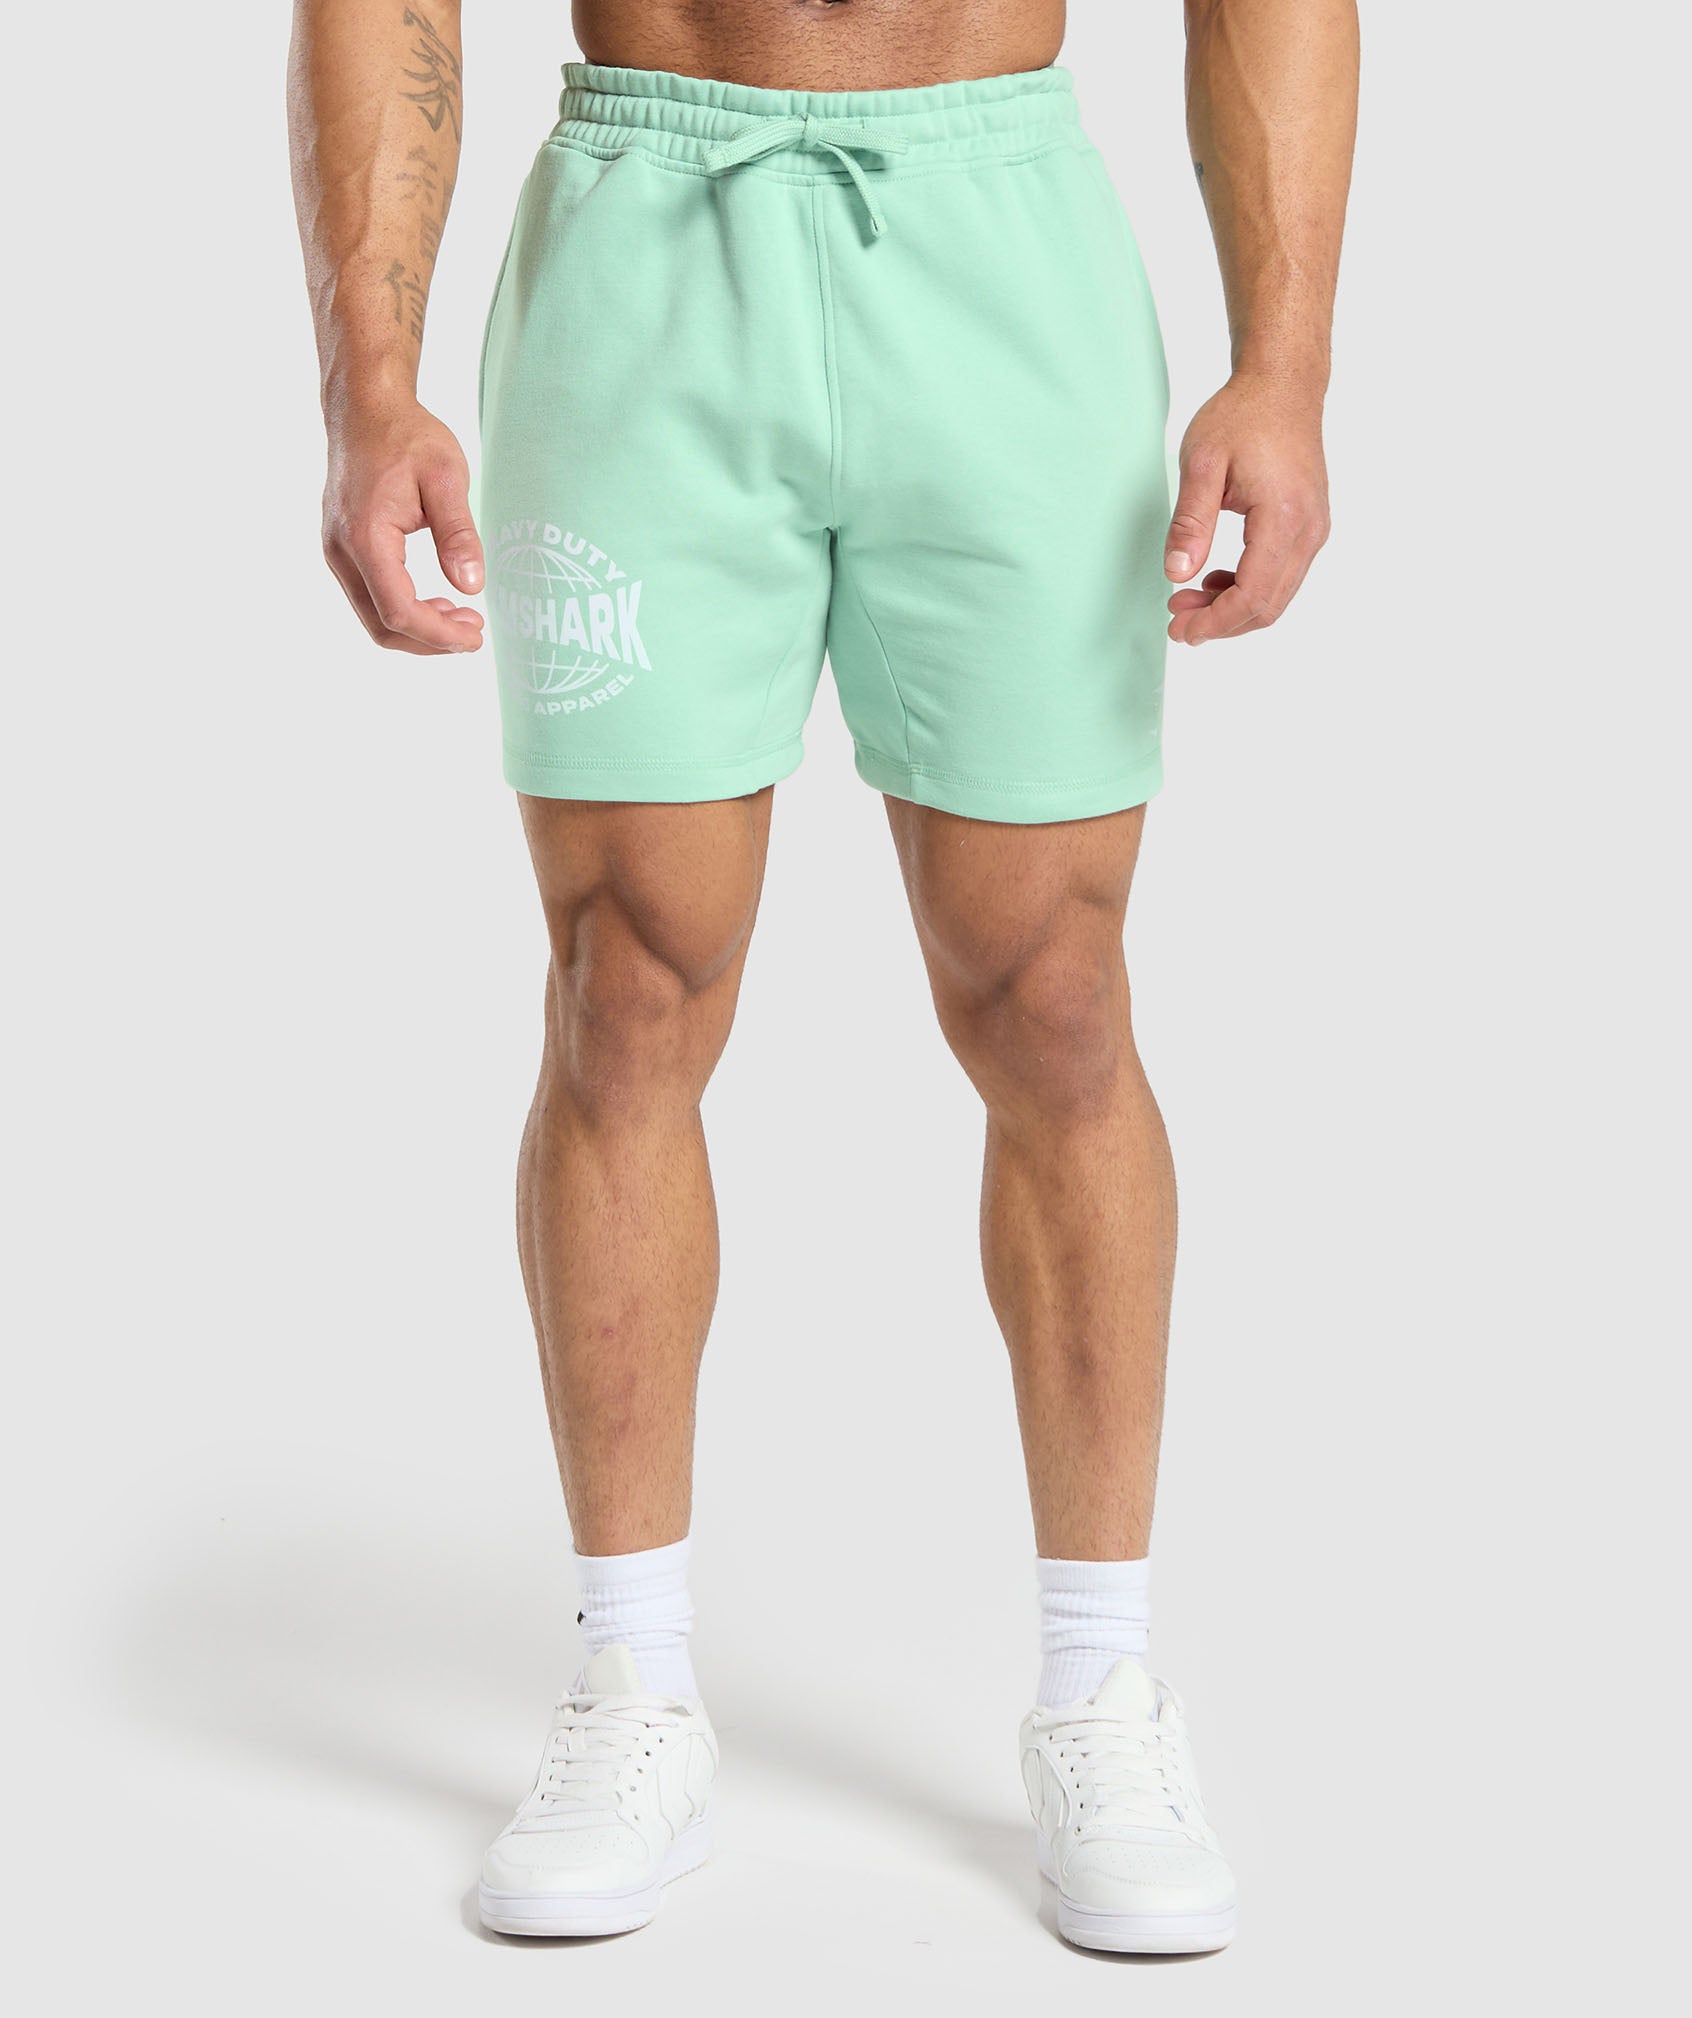 Heavy Duty Apparel 7" Shorts en Lido Green